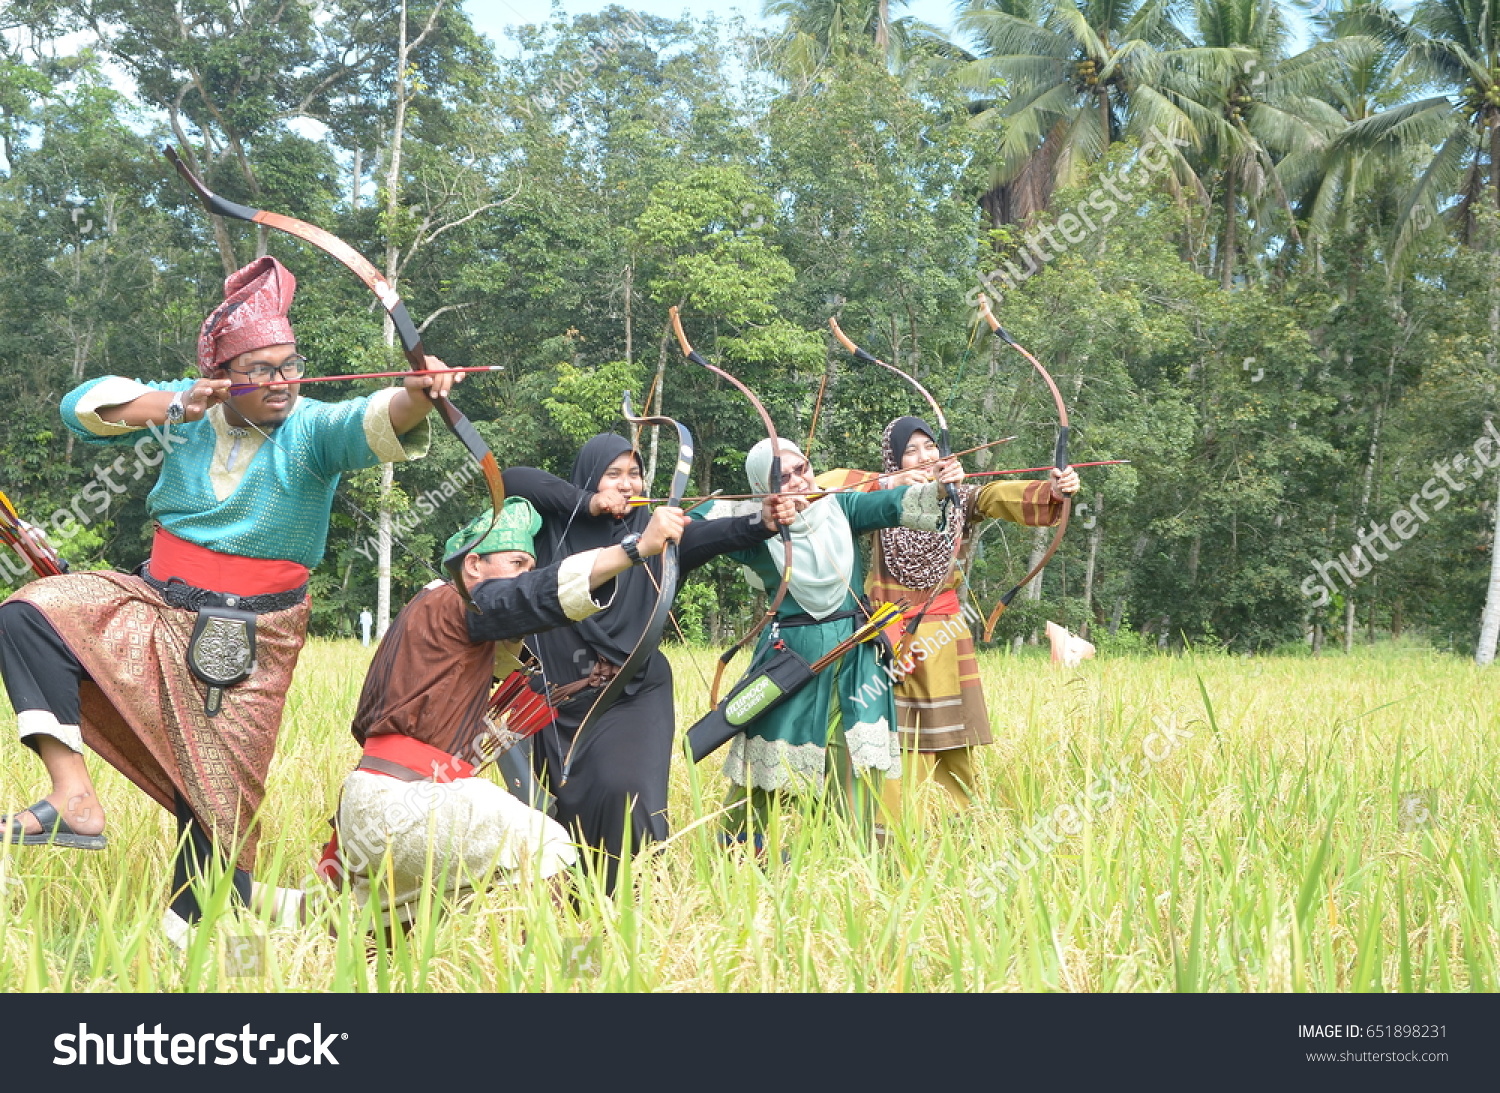 Archery malaysia